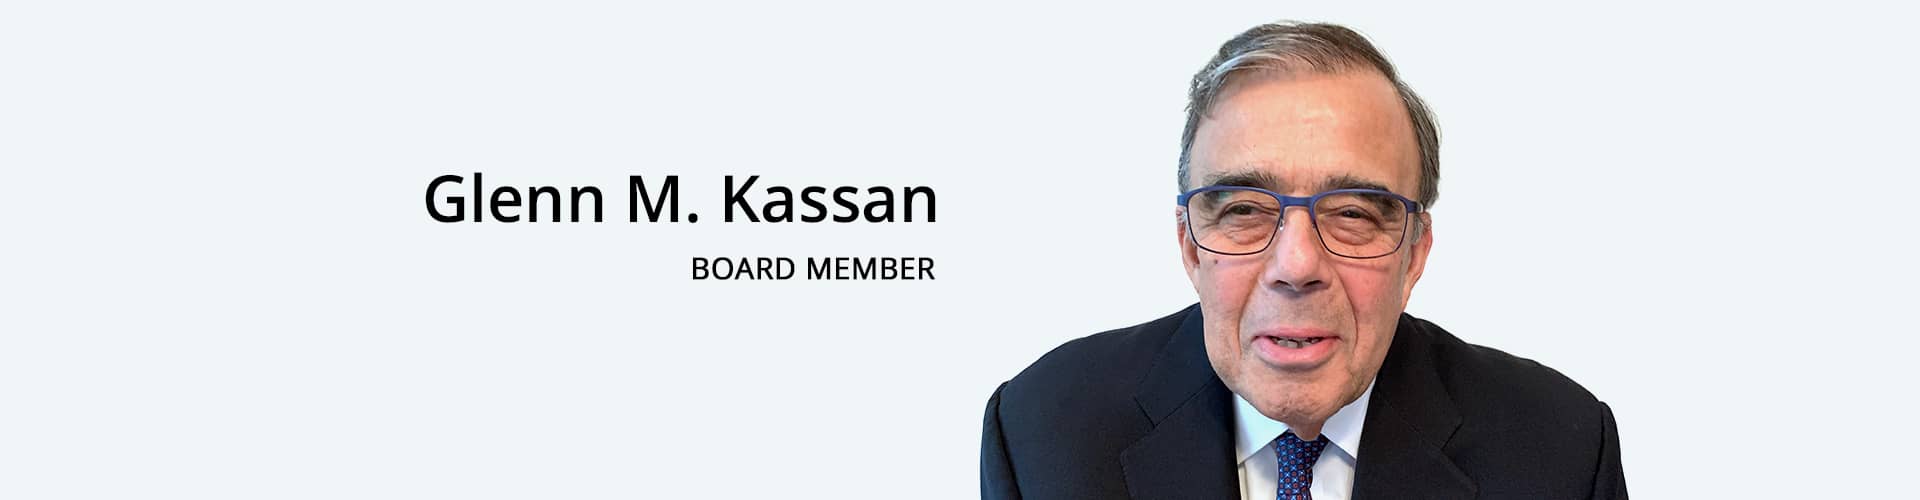 Glen M. Kassan-Board Member